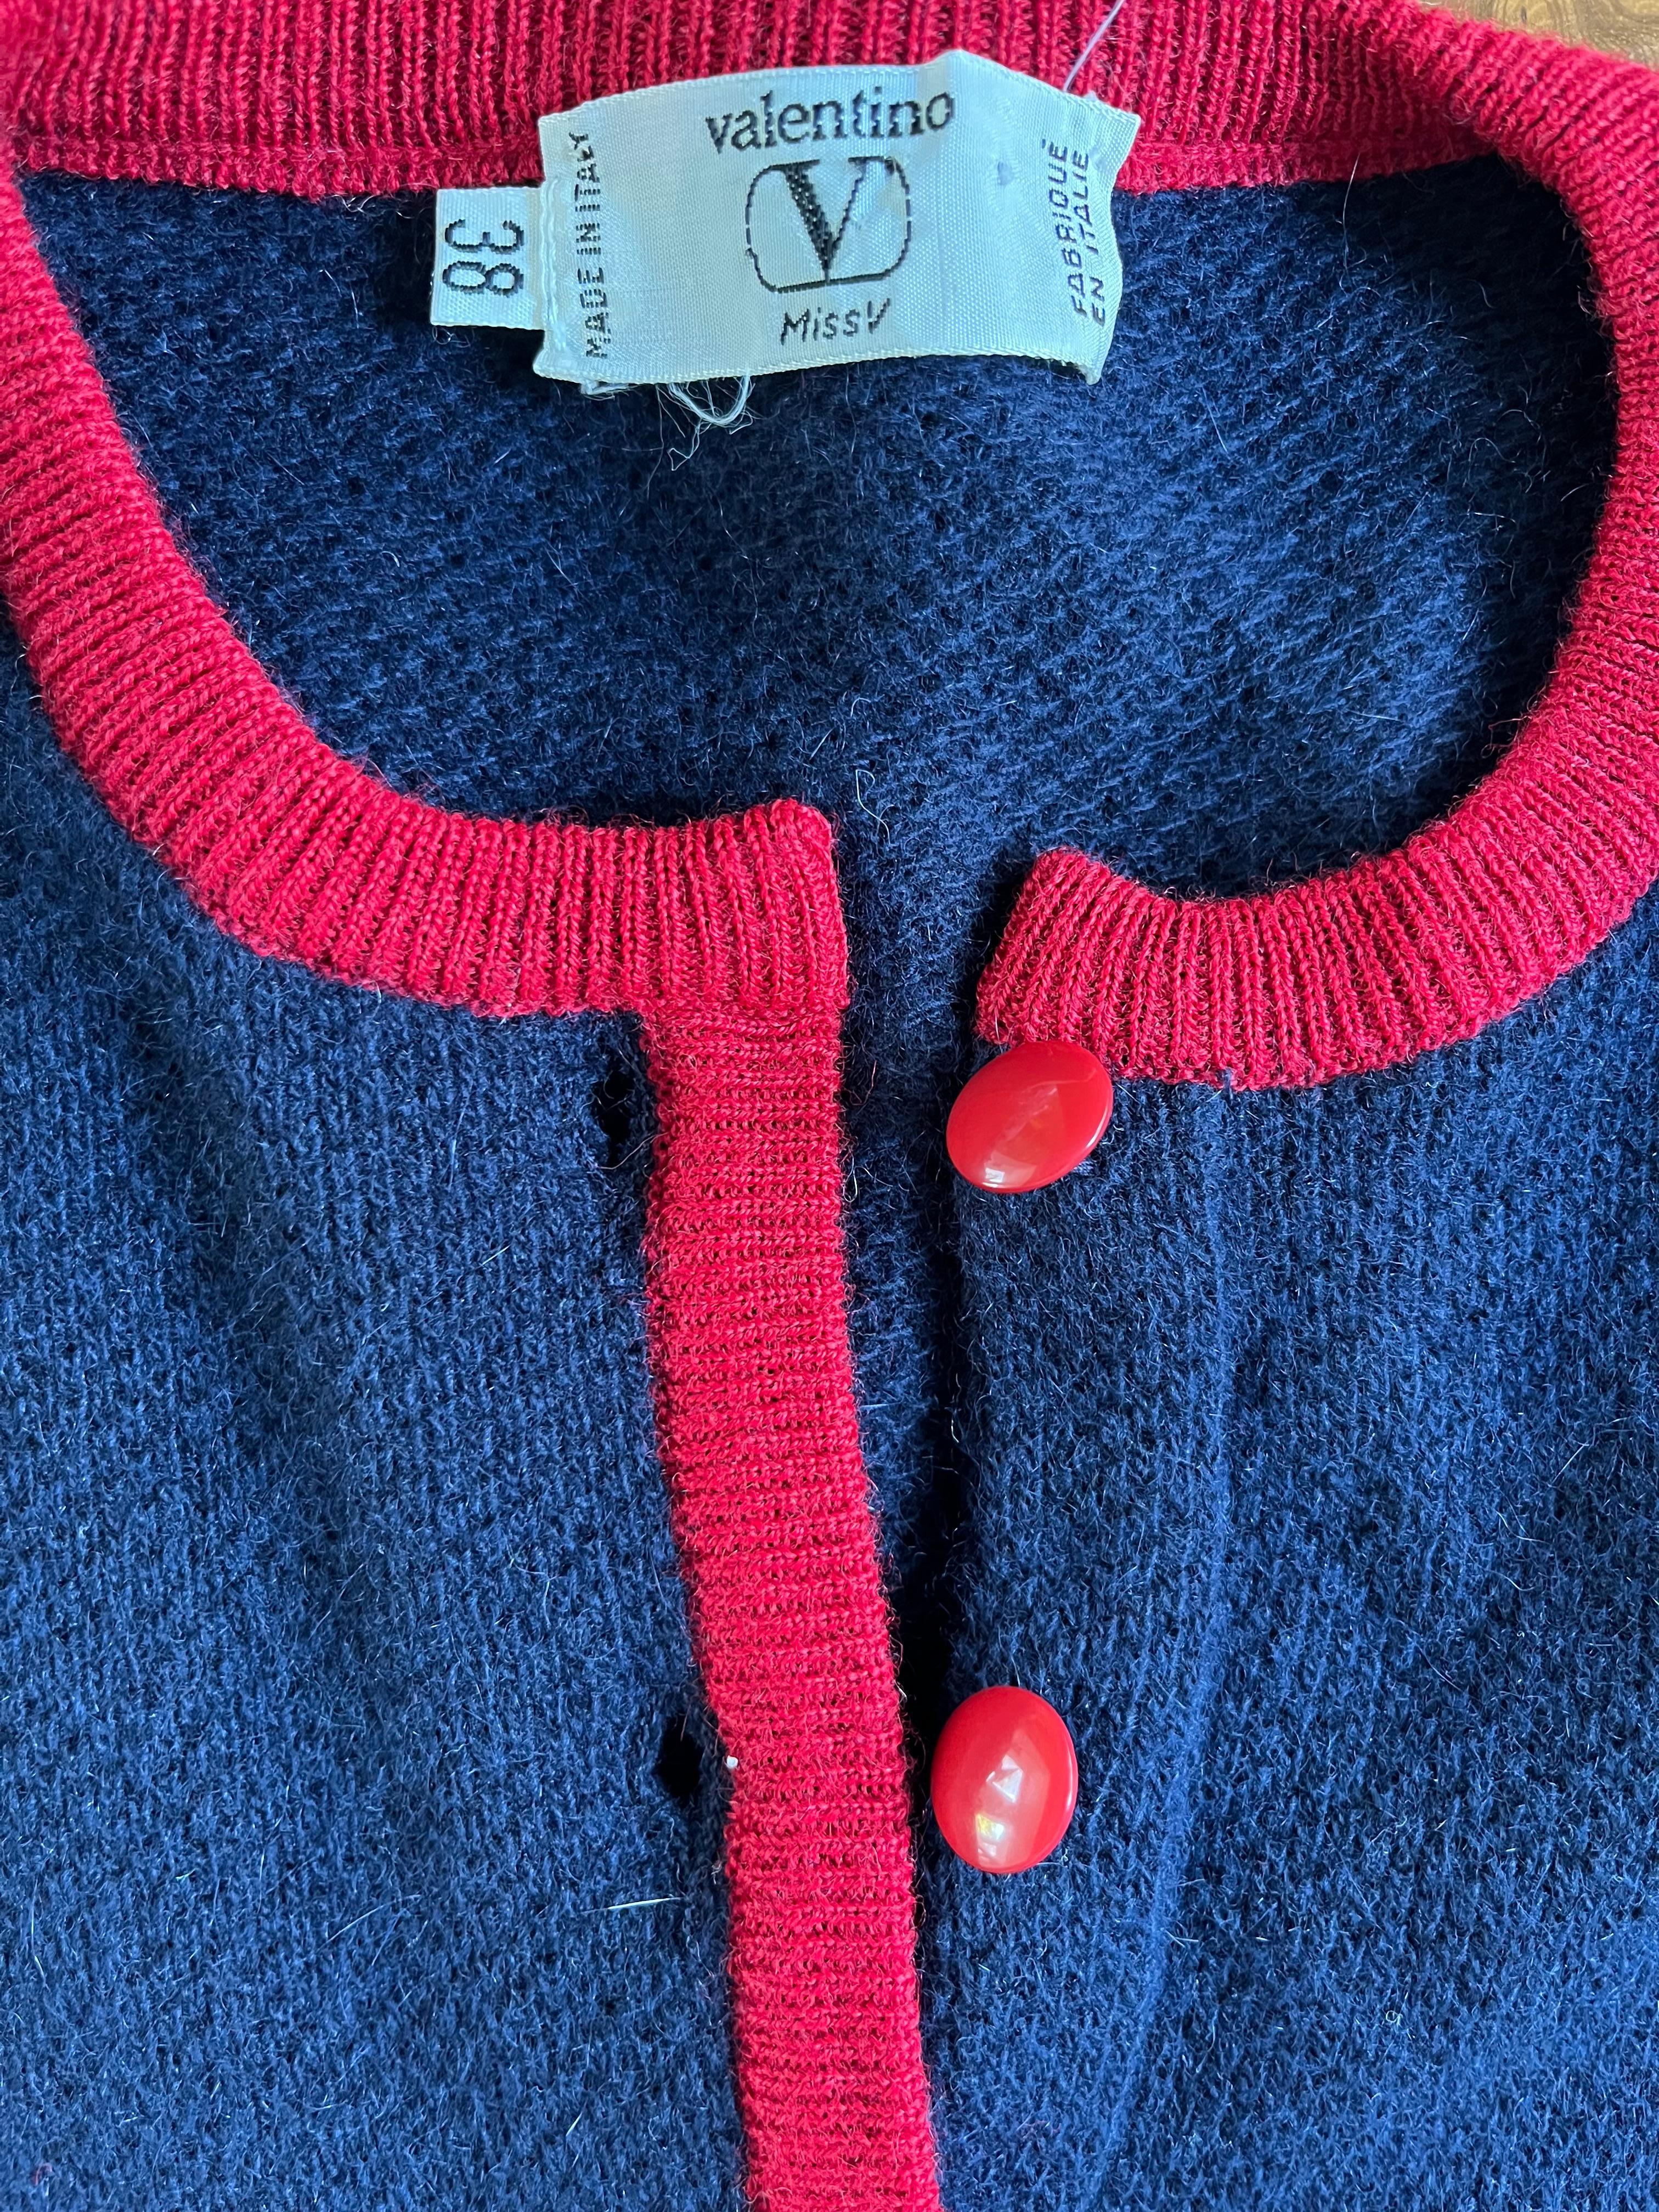 Pull en laine d'agneau et angora marine V.I.I. Valentino des années 1990.  Tricot double épaisseur avec des détails rouges autour du col, 3 boutons acryliques rouges et des détails rouges sur la couche intérieure de la zone de la taille.  Il semble